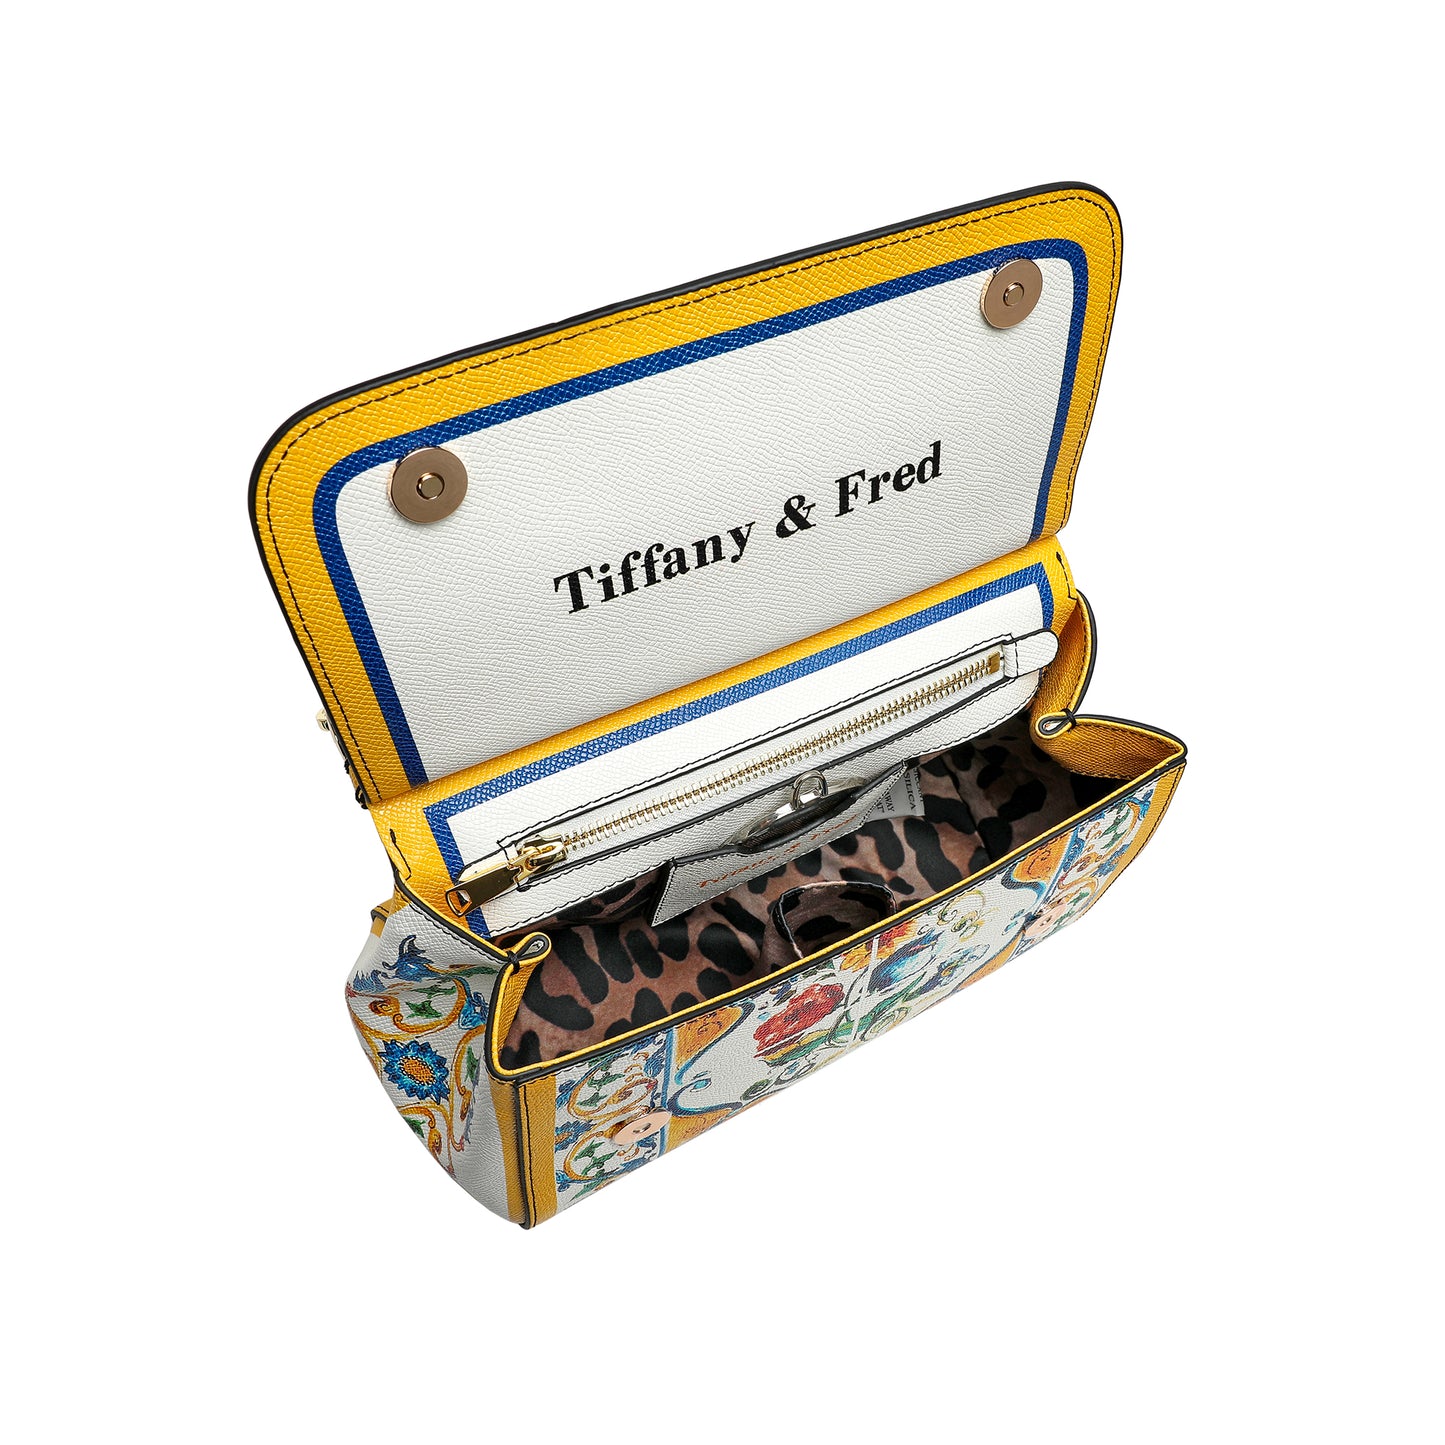 Tiffany & Fred Printed Leather Satchel/Shoulder Bag